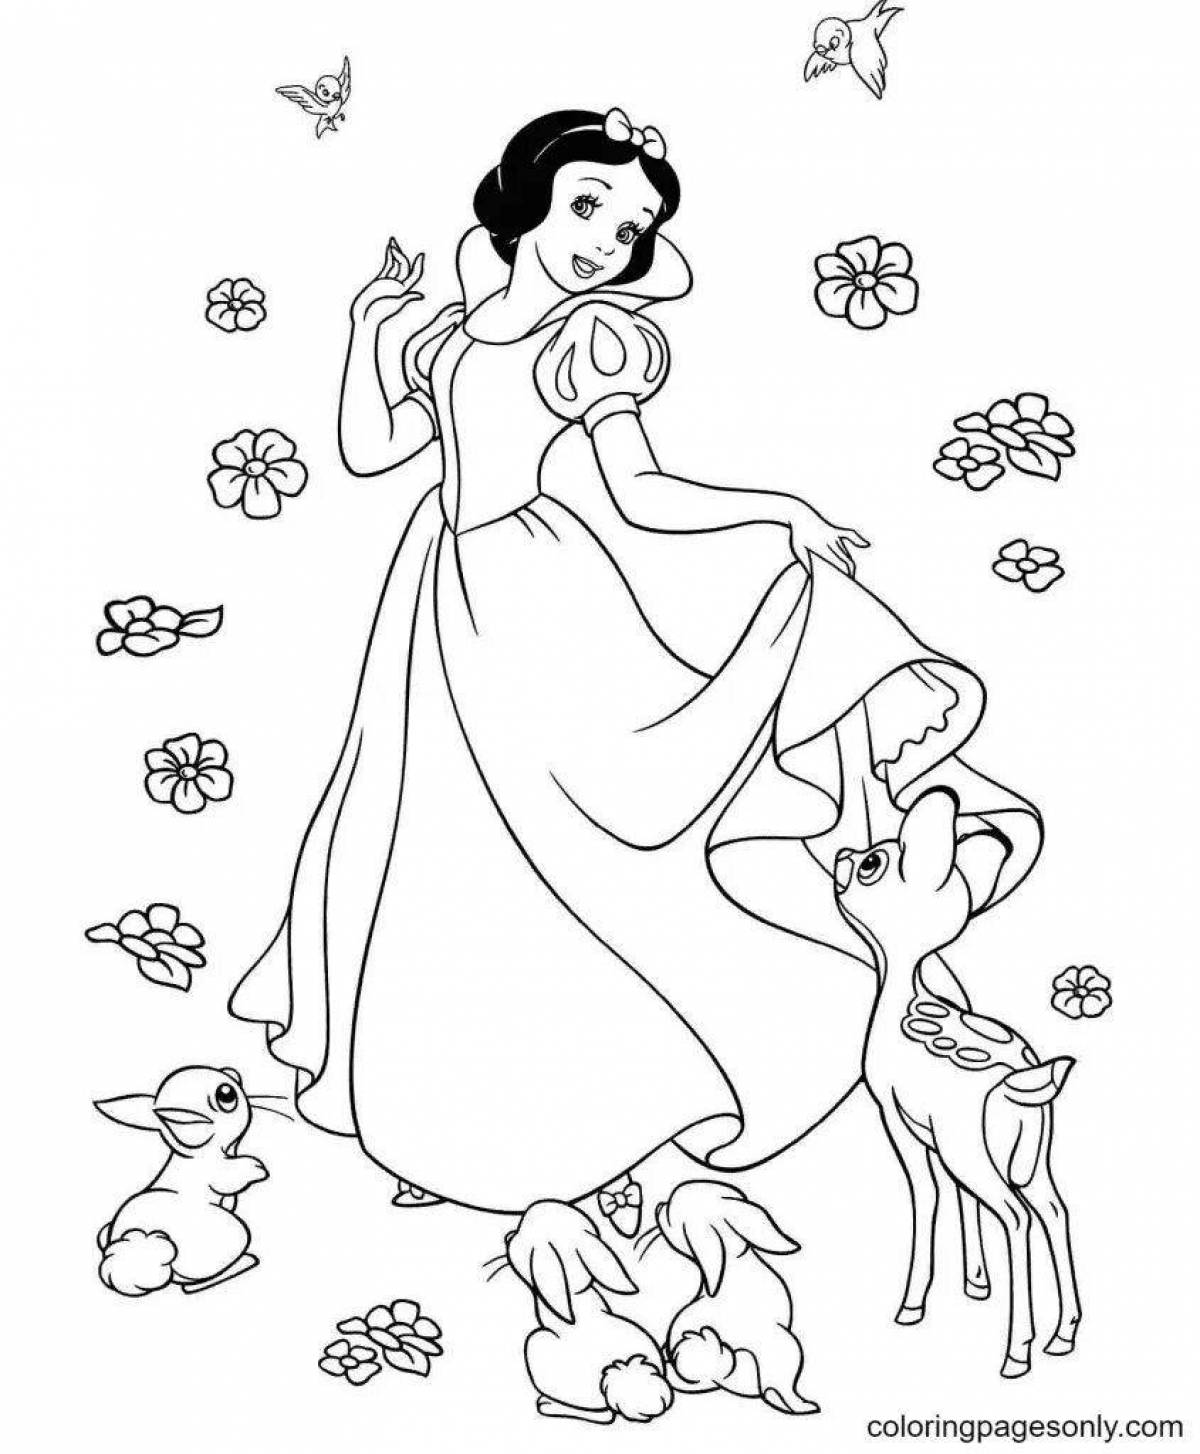 Величественная раскраска для девочек 6-7 лет принцесса